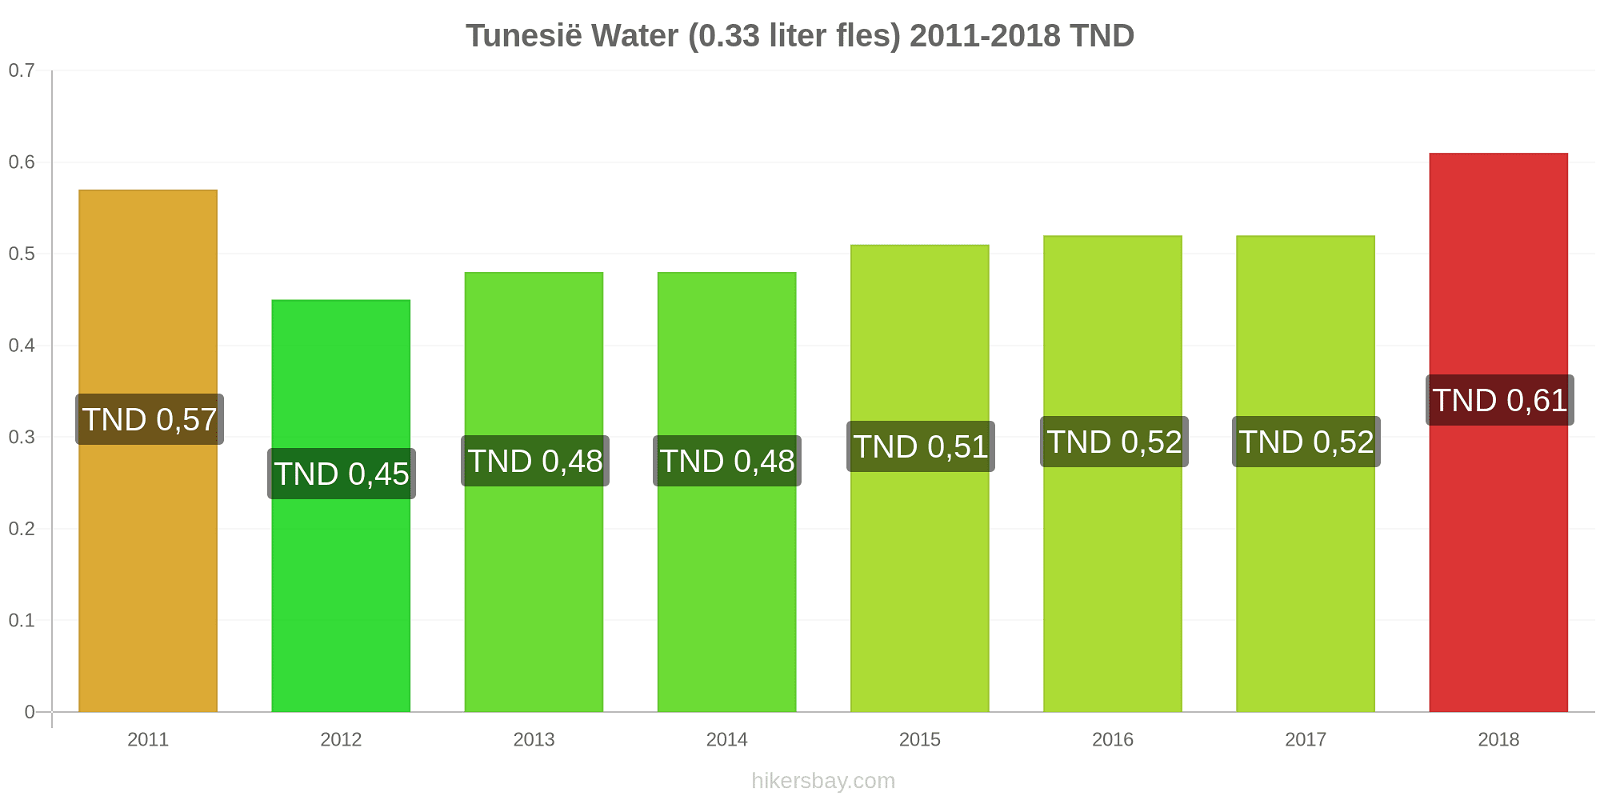 Tunesië prijswijzigingen Water (0,33 liter fles) hikersbay.com